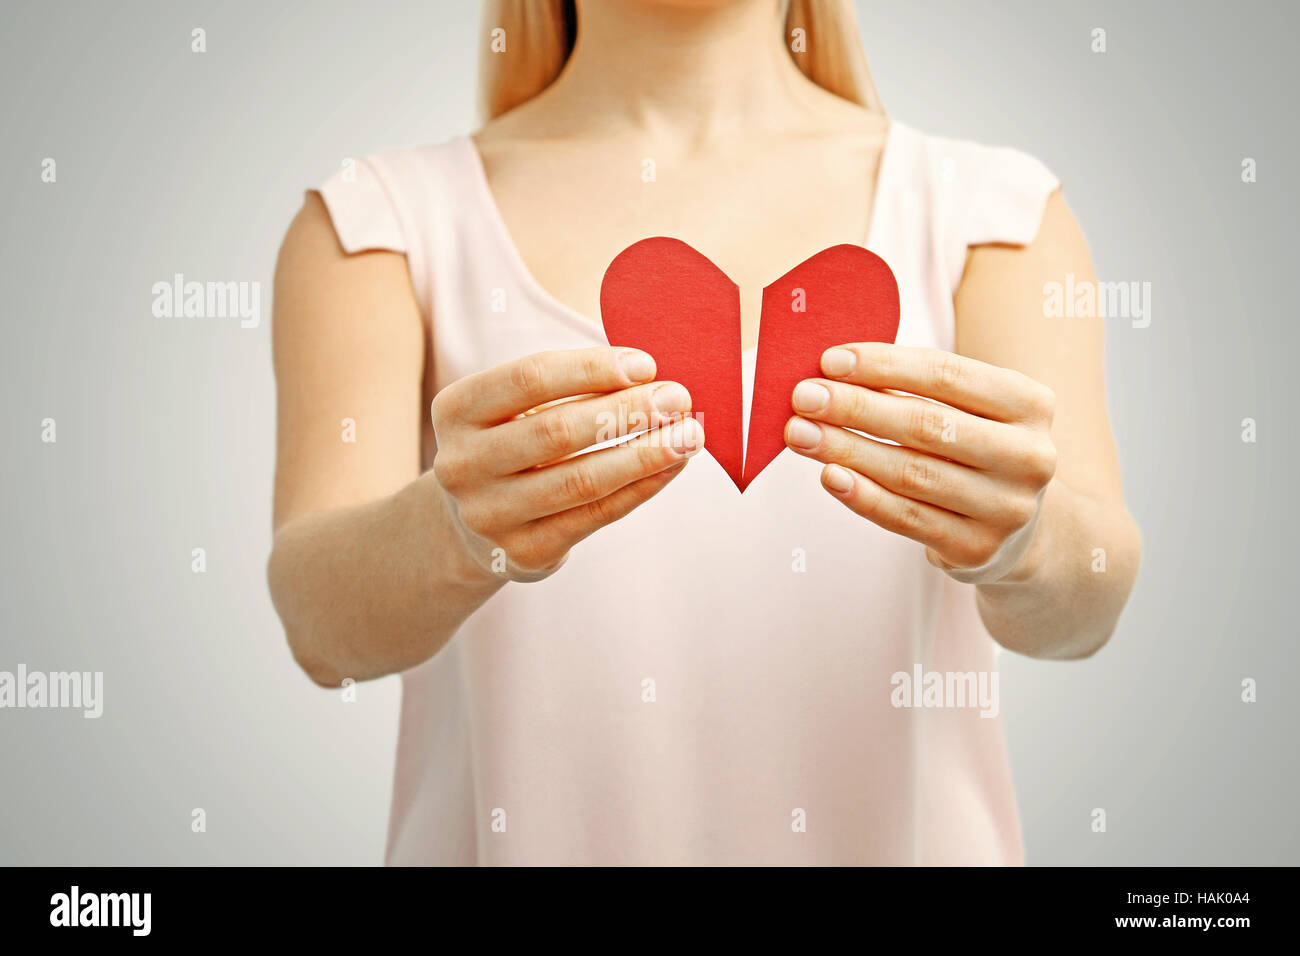 Rotto cuore rosso nella donna mani. concetto di rapporto, il divorzio, dolore Foto Stock